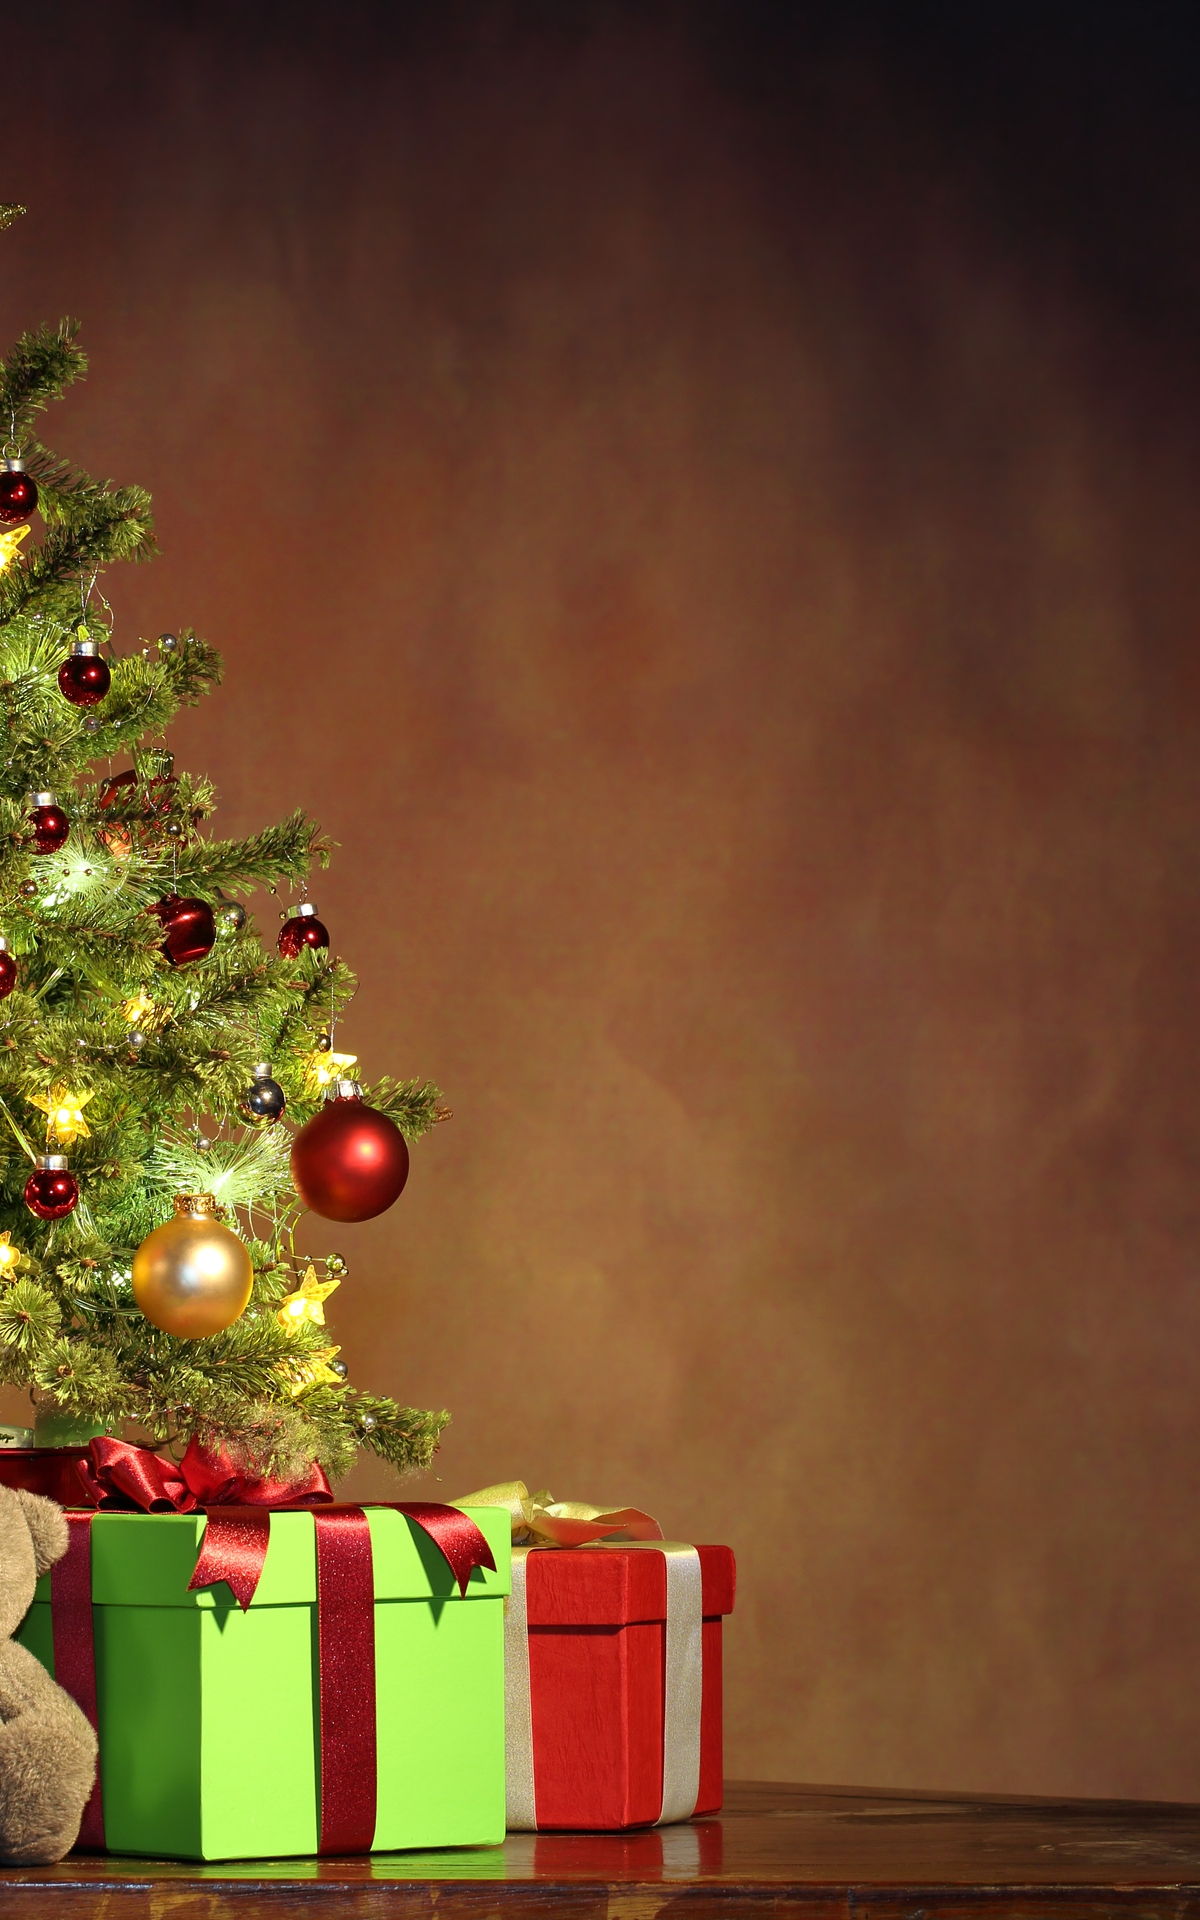 Картинка: Рождество, новый год, подарки, мишка, игрушка, ёлочка, звезда, украшение, шары, нарядная